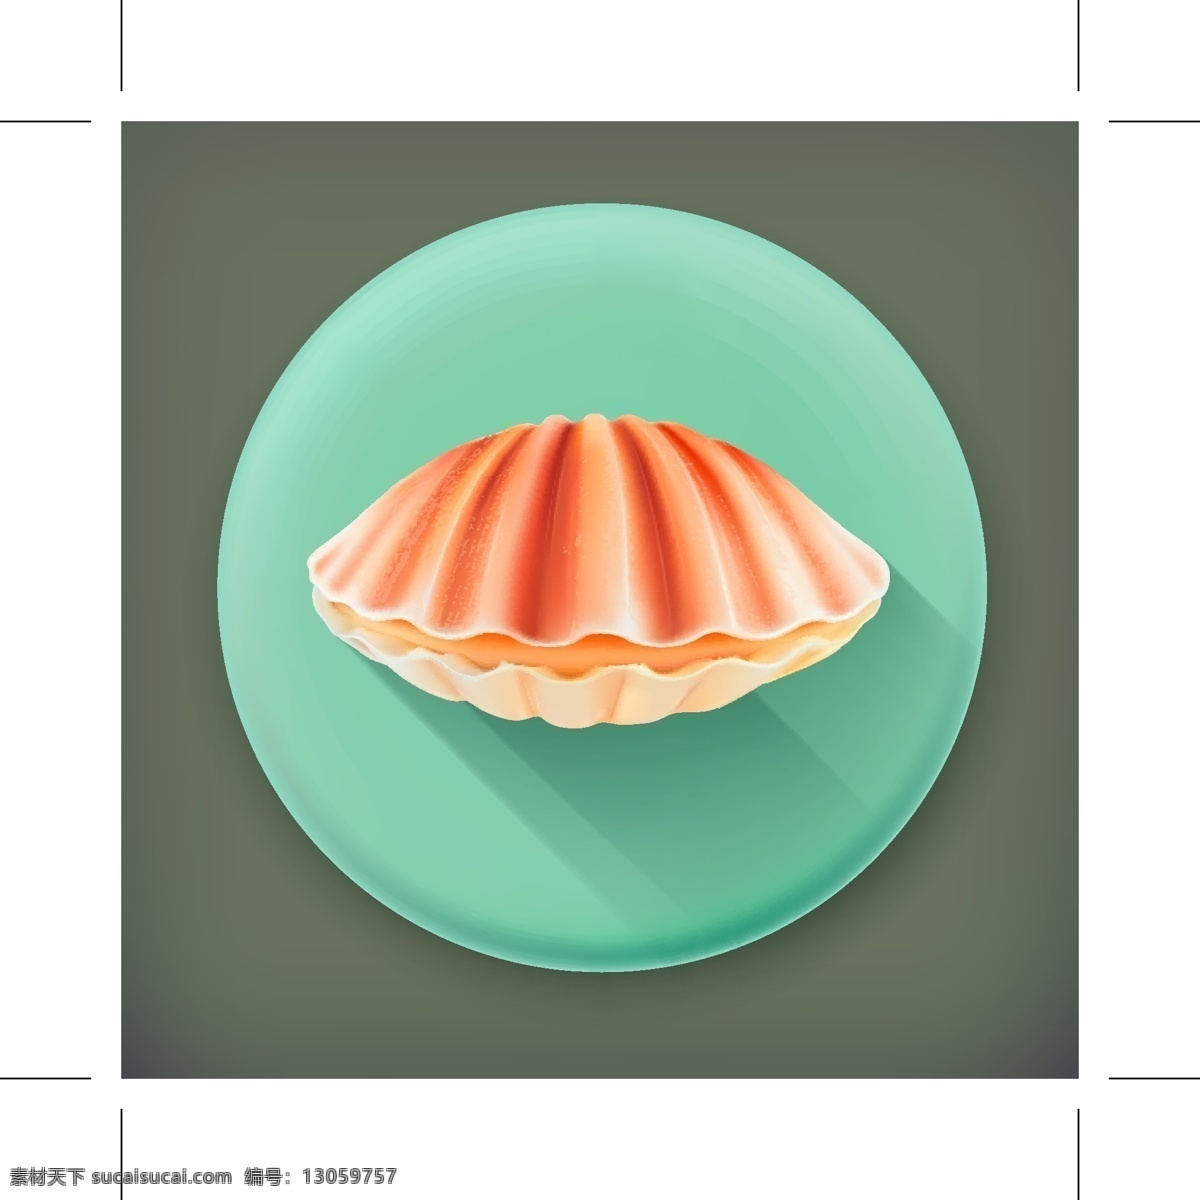 彩色 卡通 贝壳 图标素材 矢量素材 设计素材